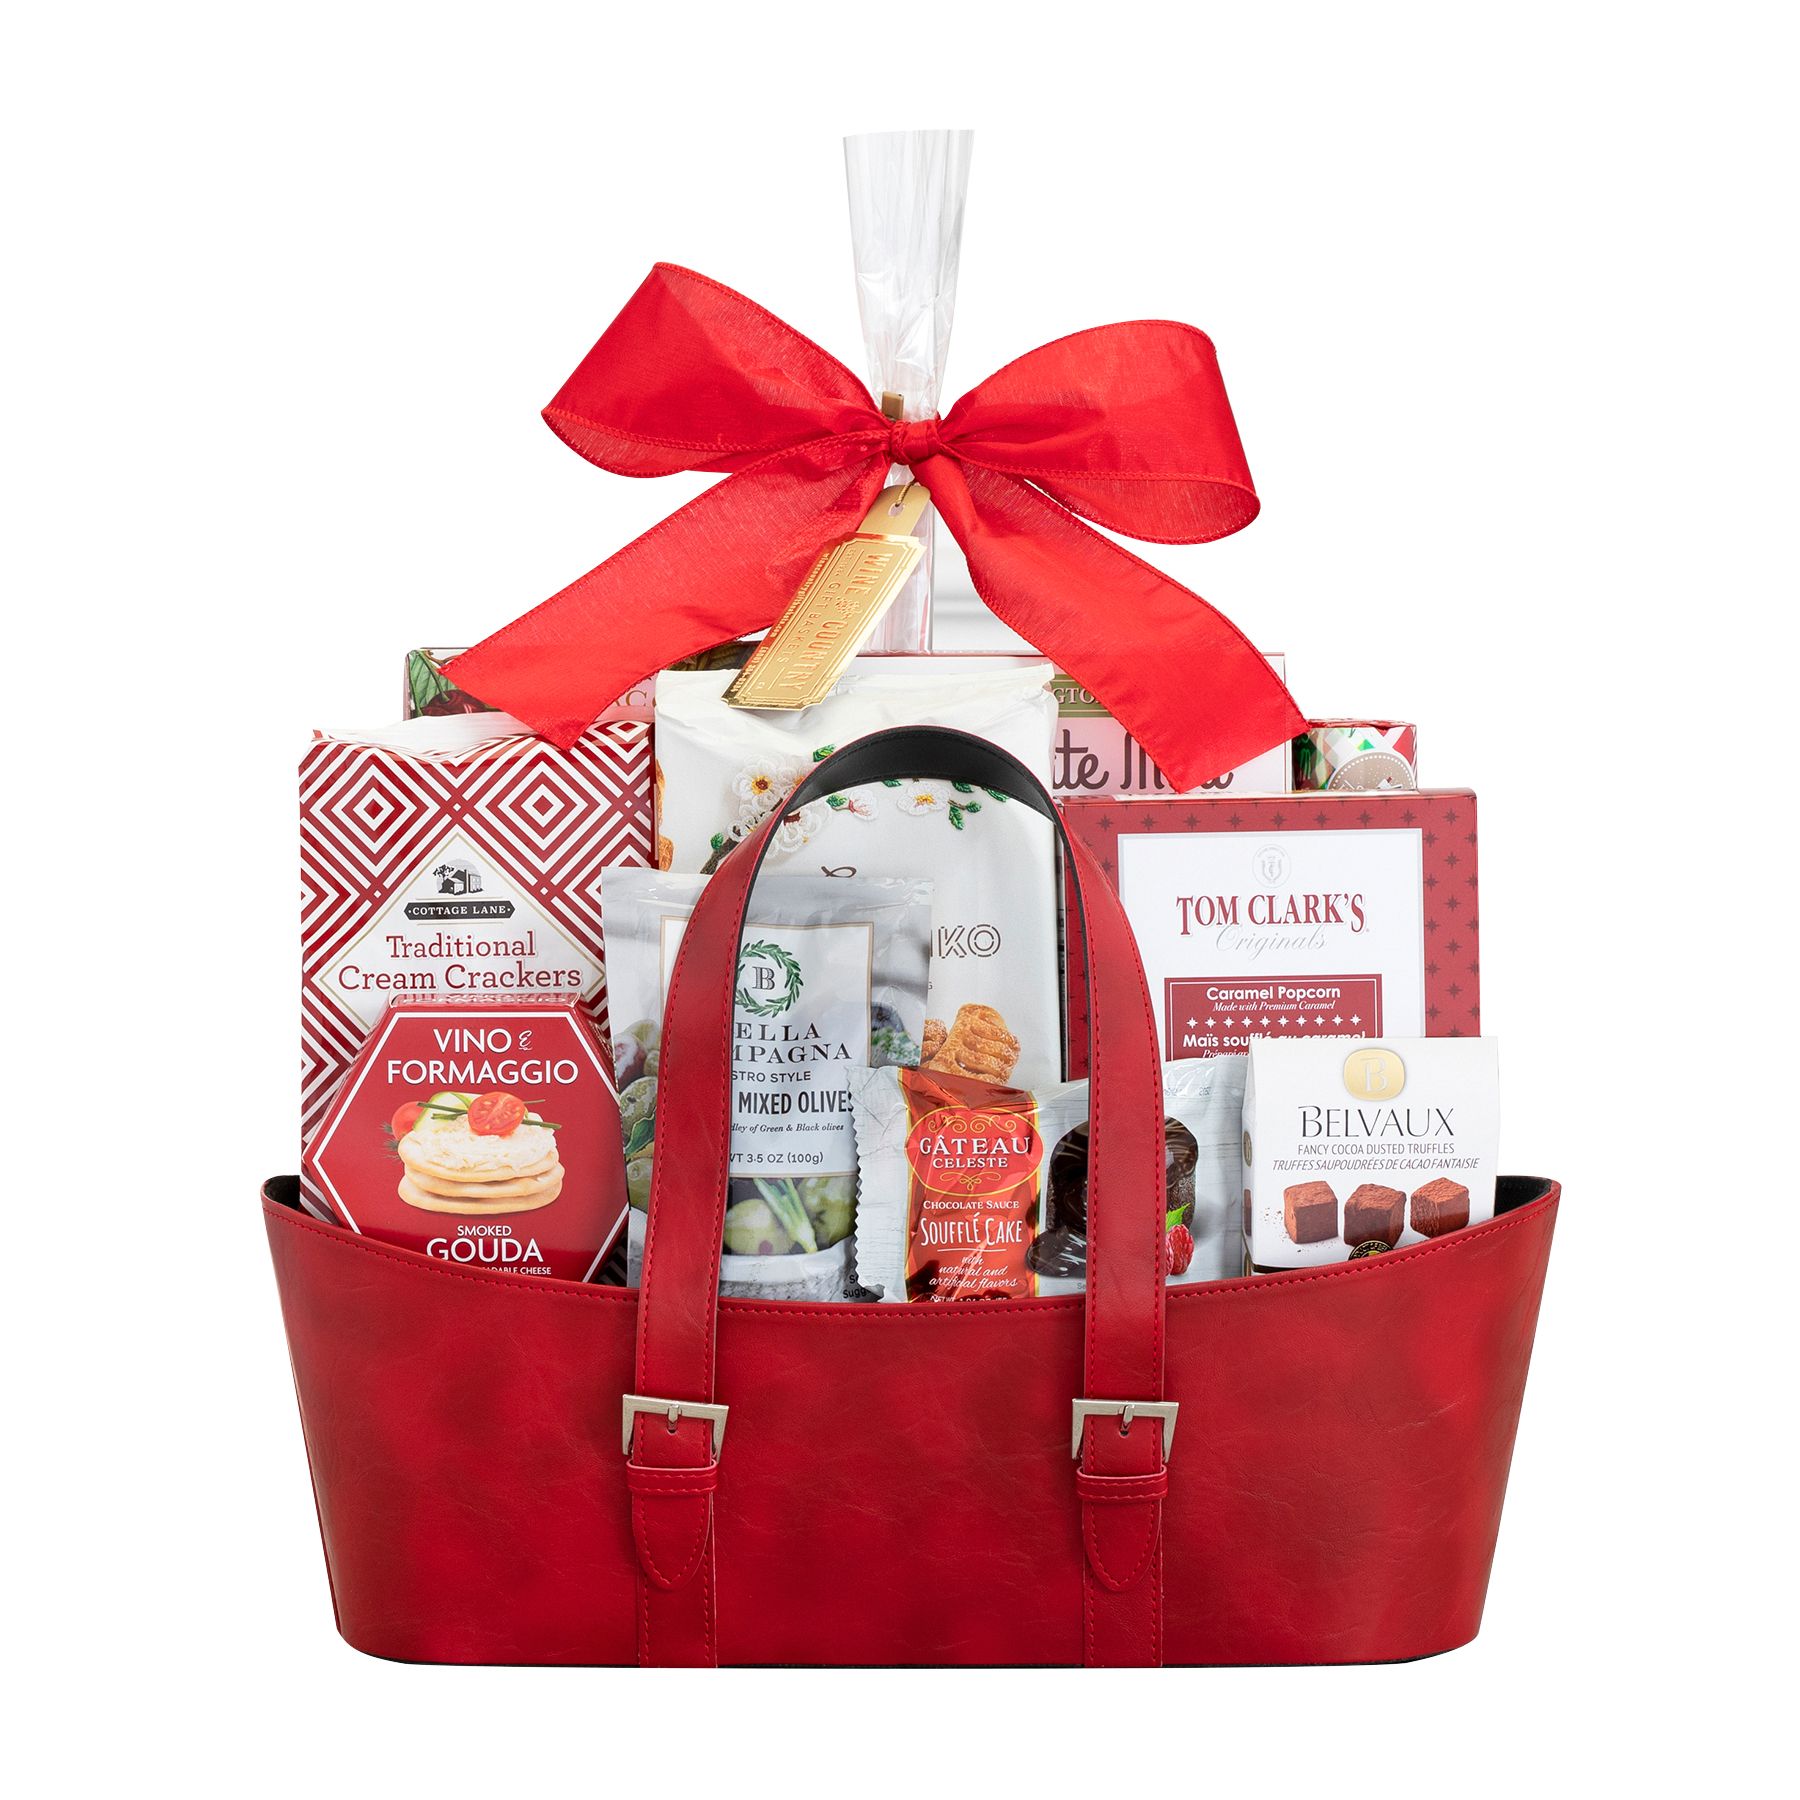 Gourmet Preserves Gift Pack (BJ6)